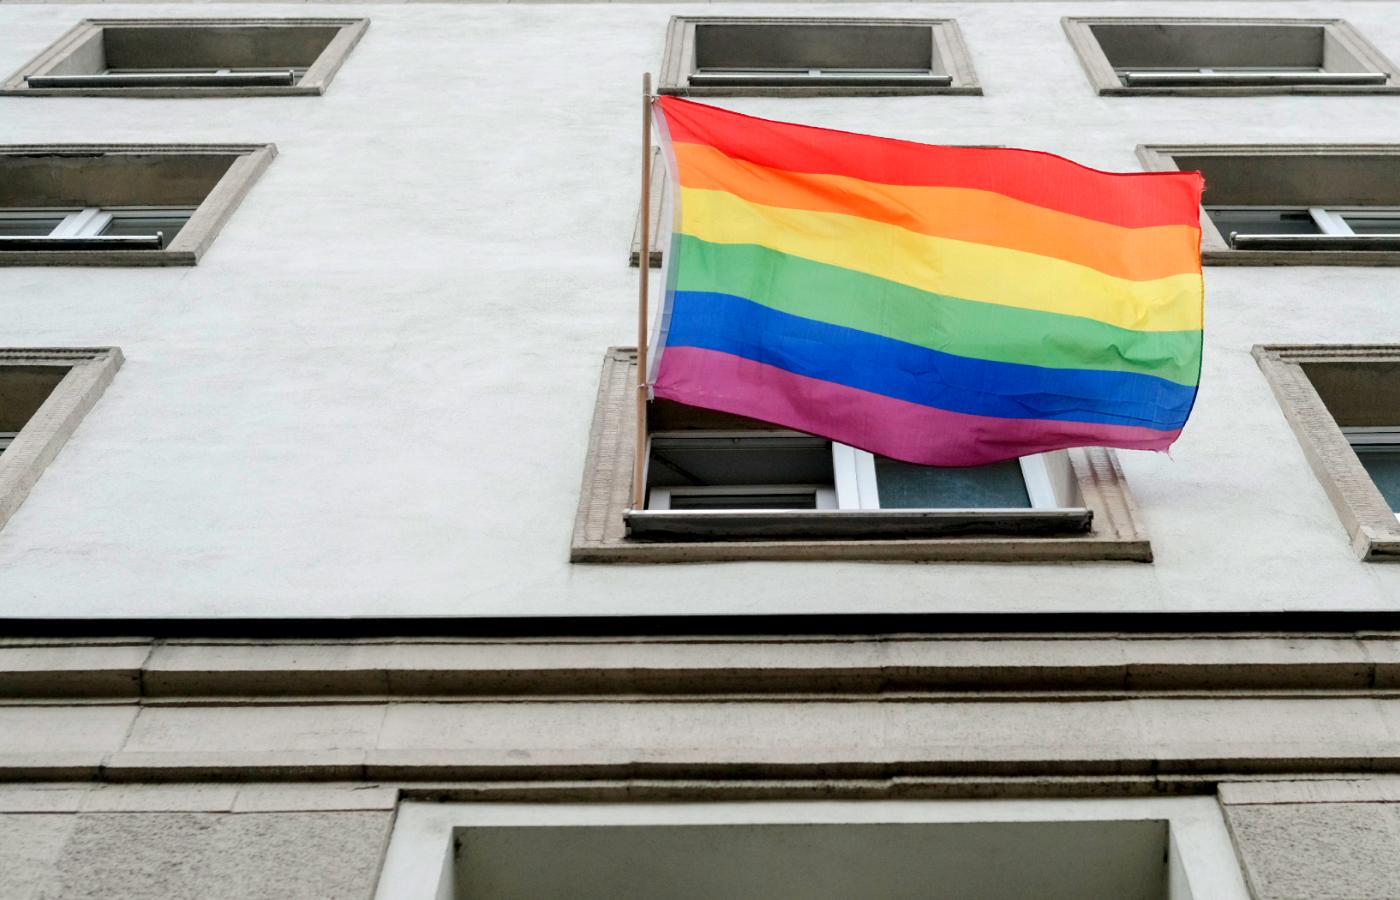 Demonstracja solidarności ze społecznością LGBT, Poznań, maj 2020 r.